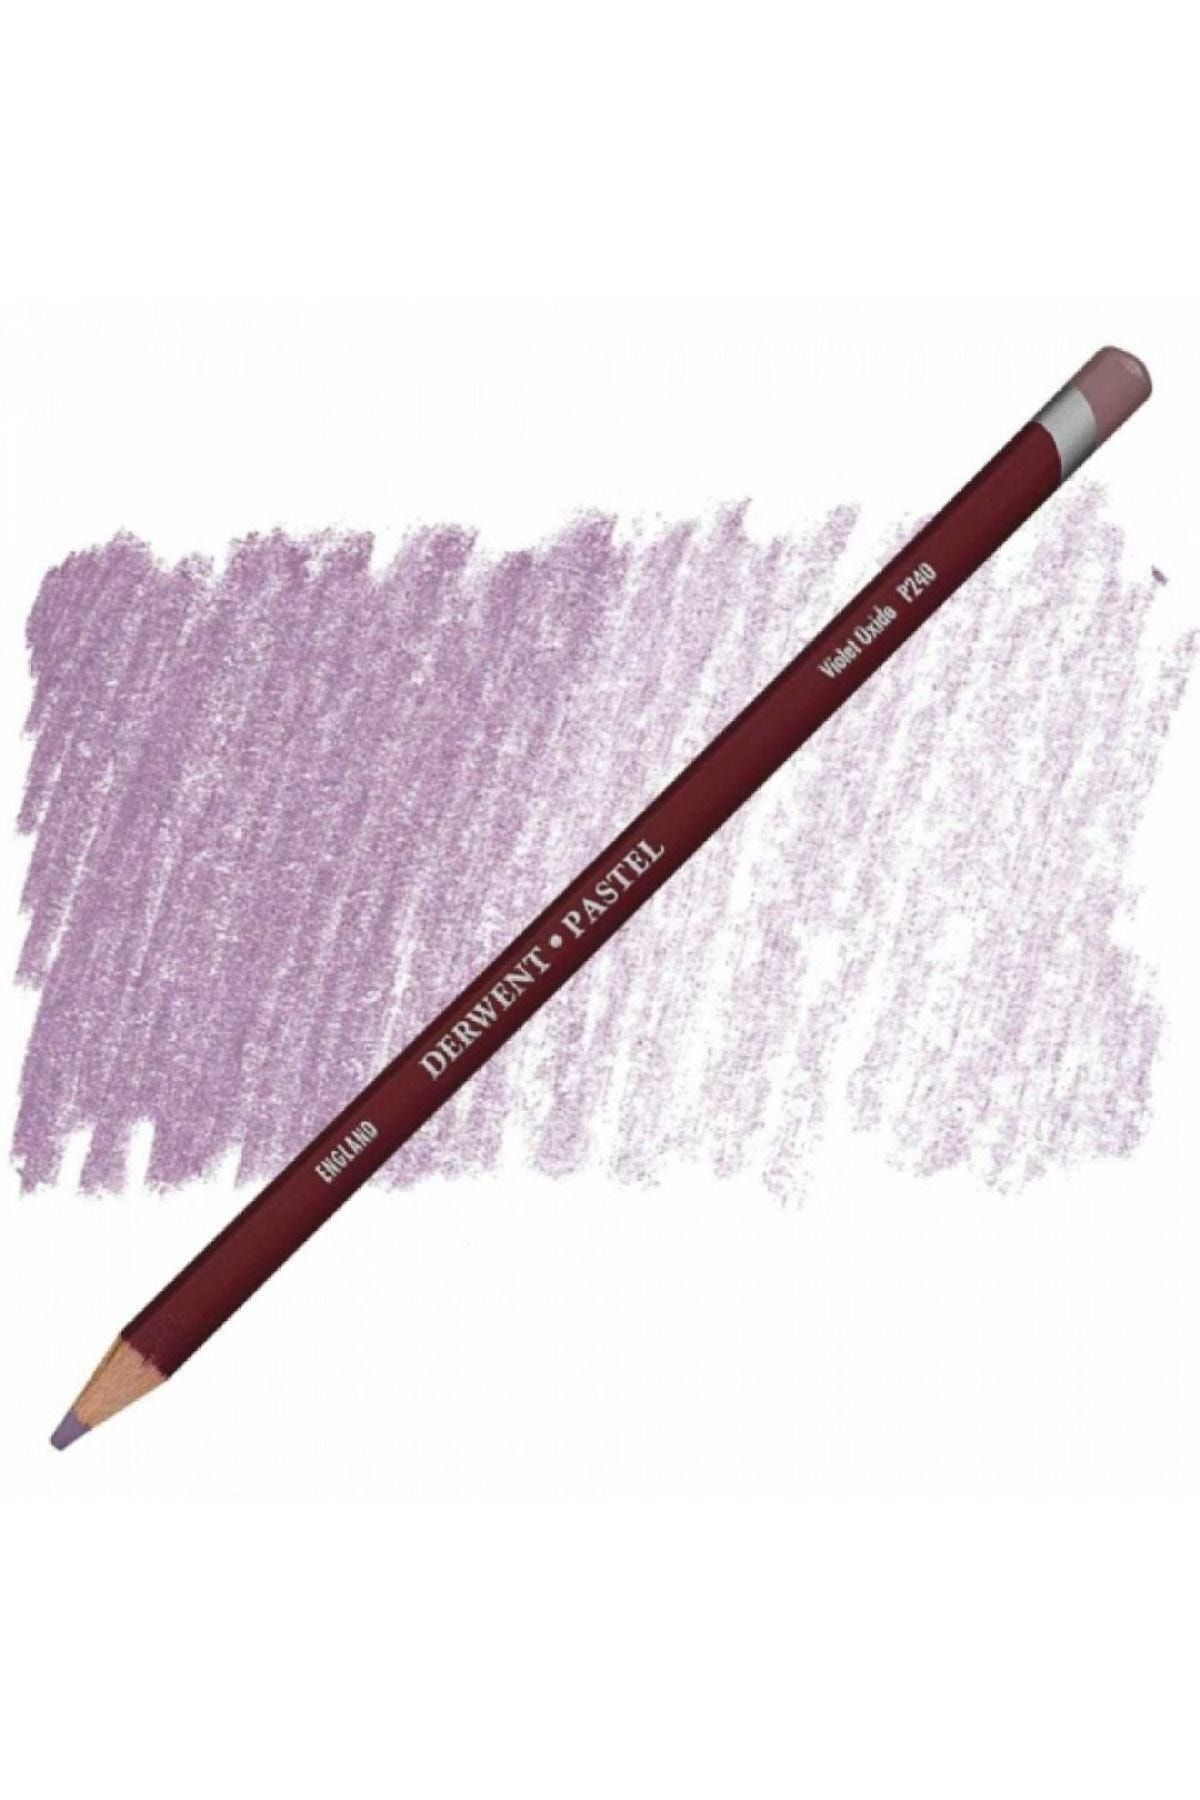 Derwent Pastel Pencil P240 Violet Oxide